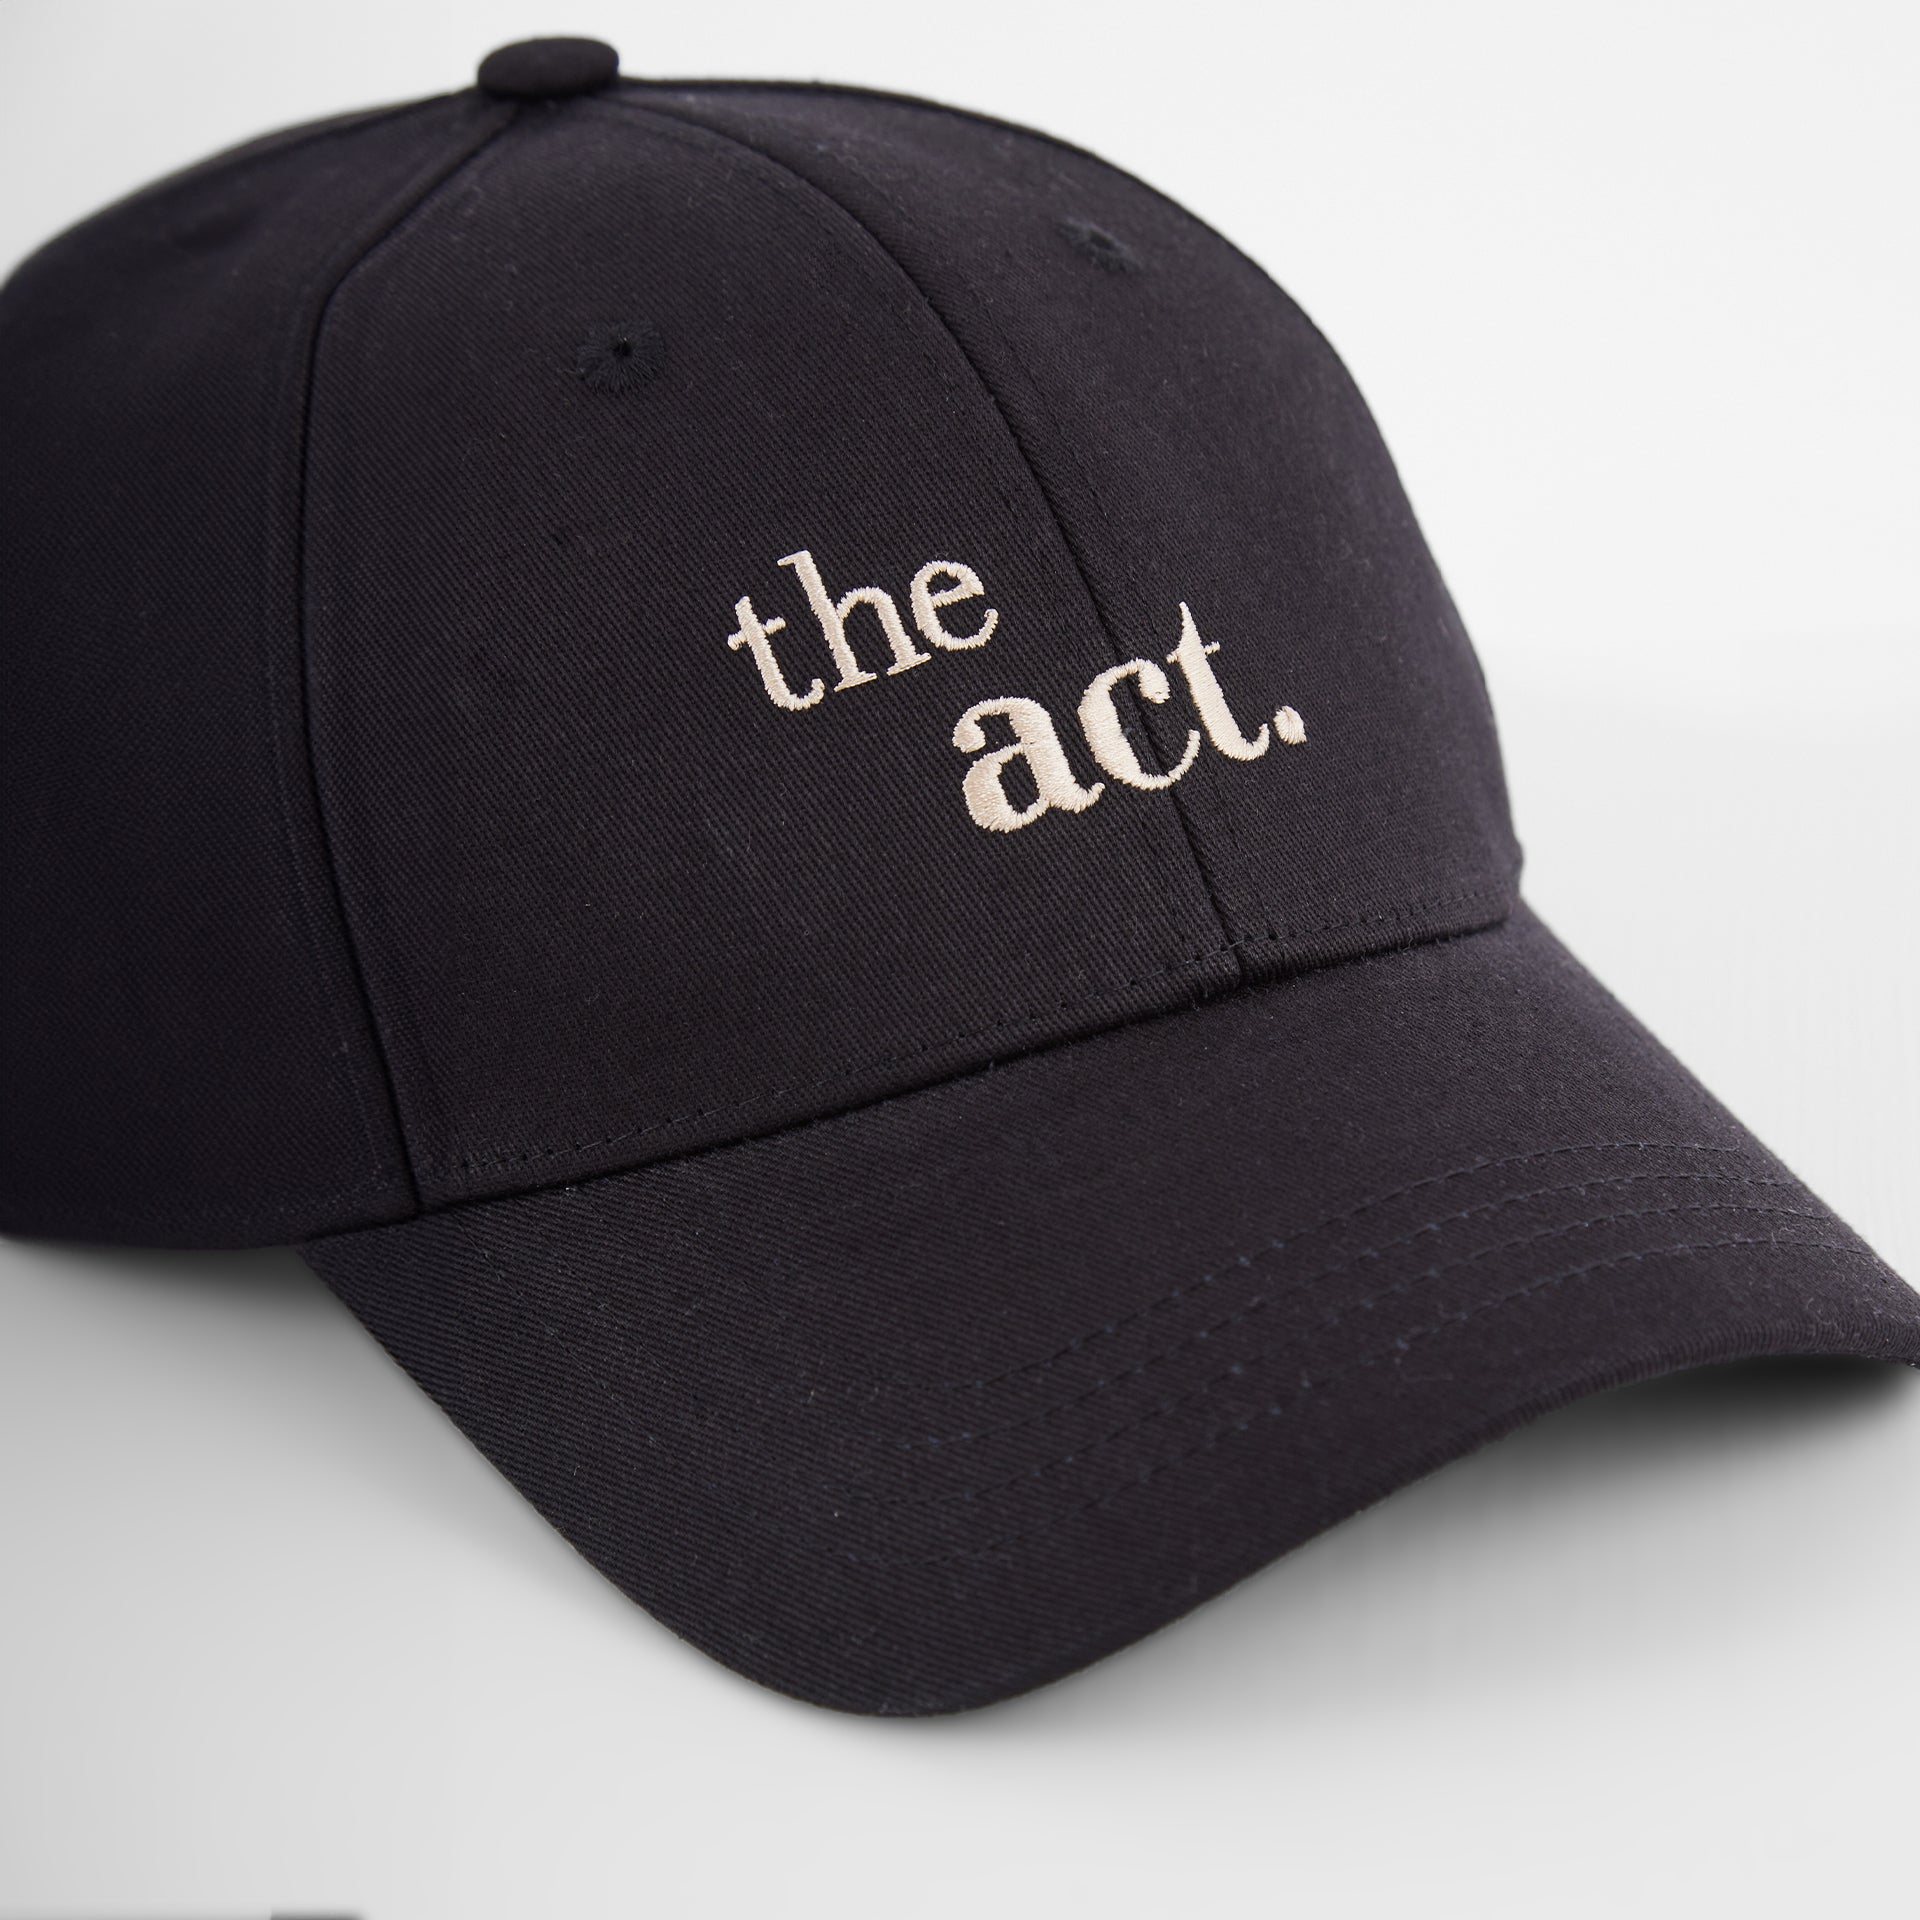 the cap. black